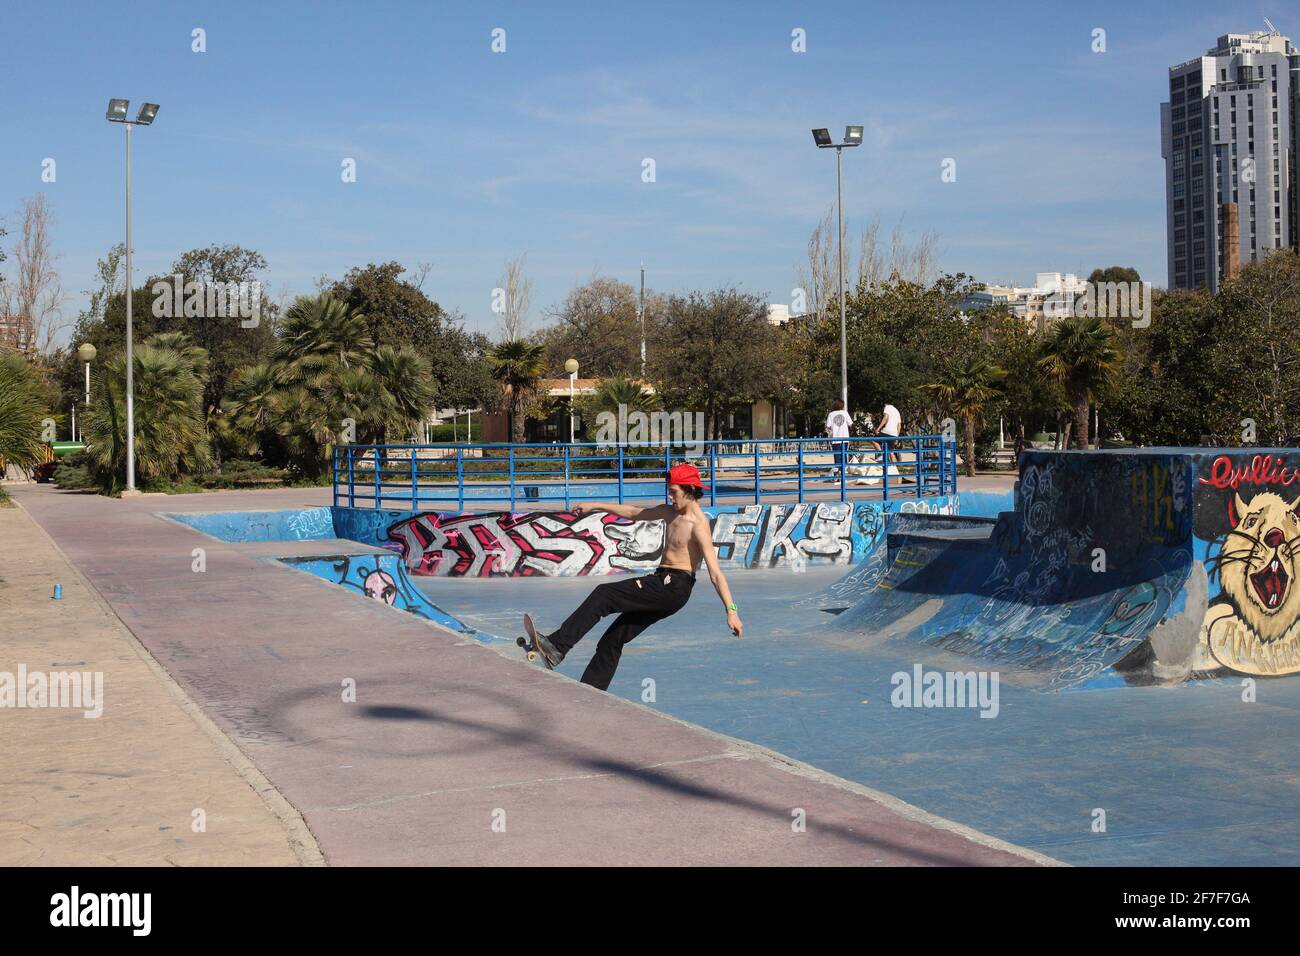 Urban skate boarder in  Valencia city in Spain Stock Photo